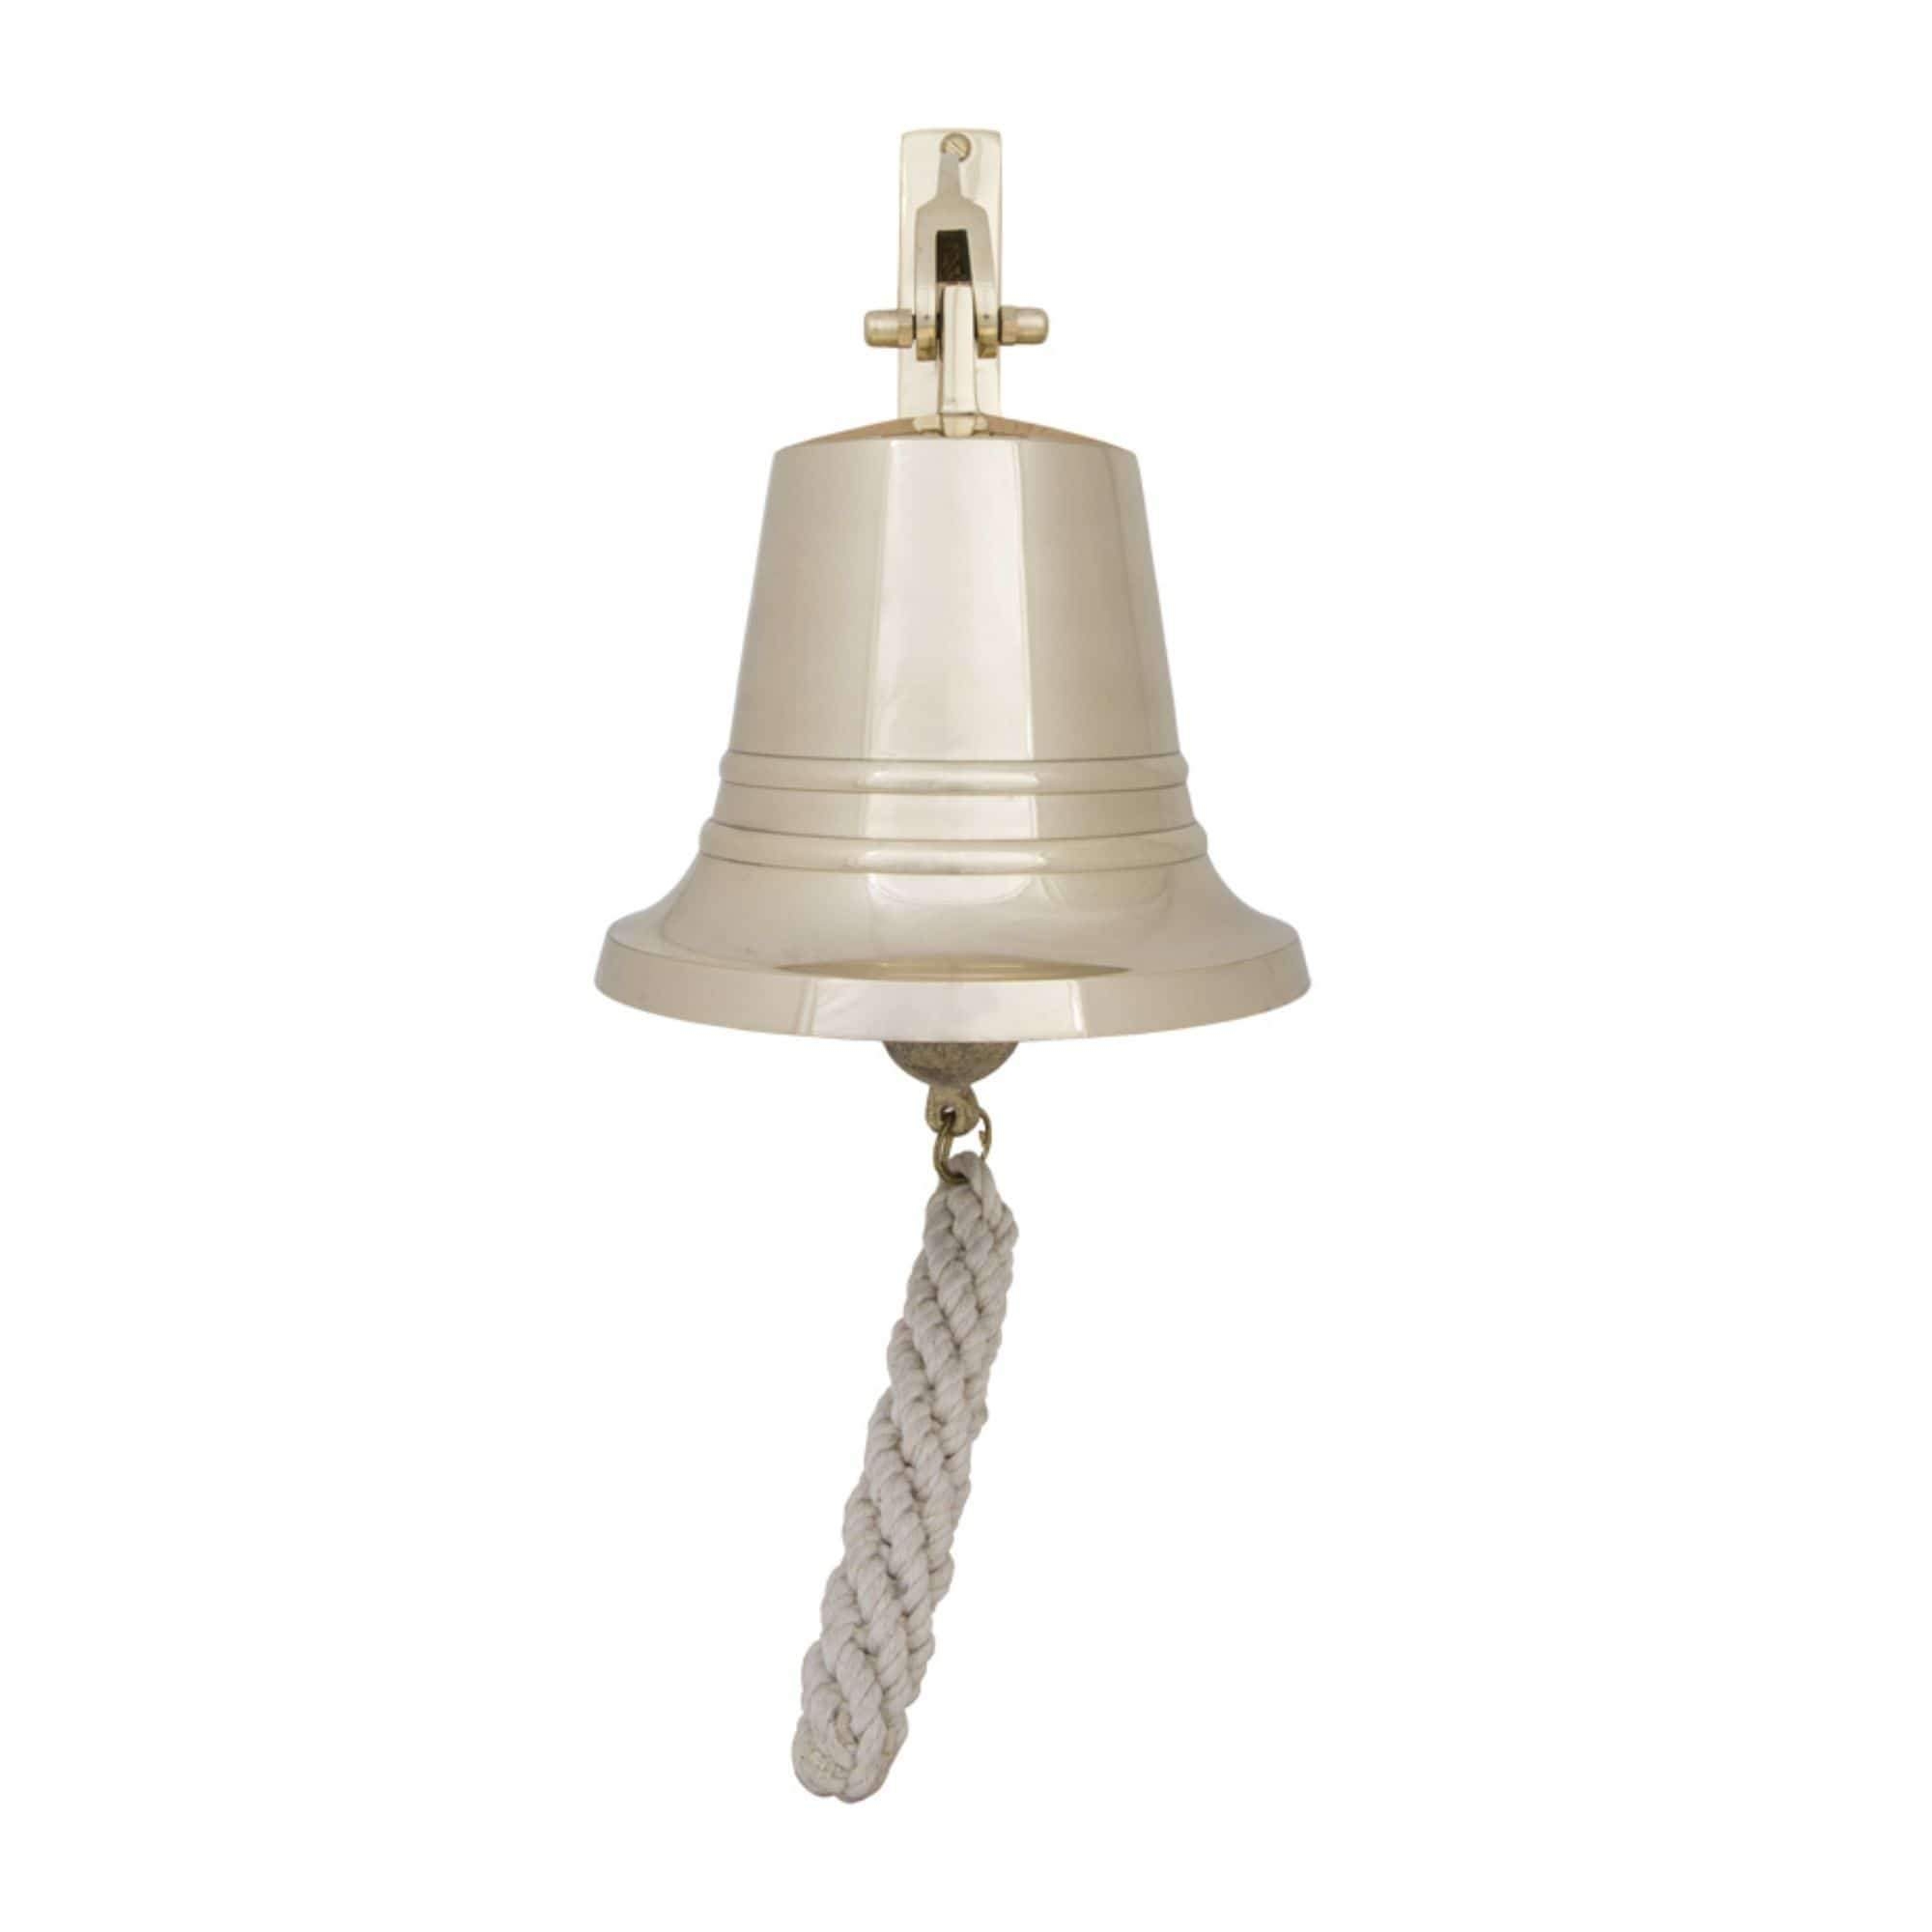 Bell – Solid Brass – 17.5 cm